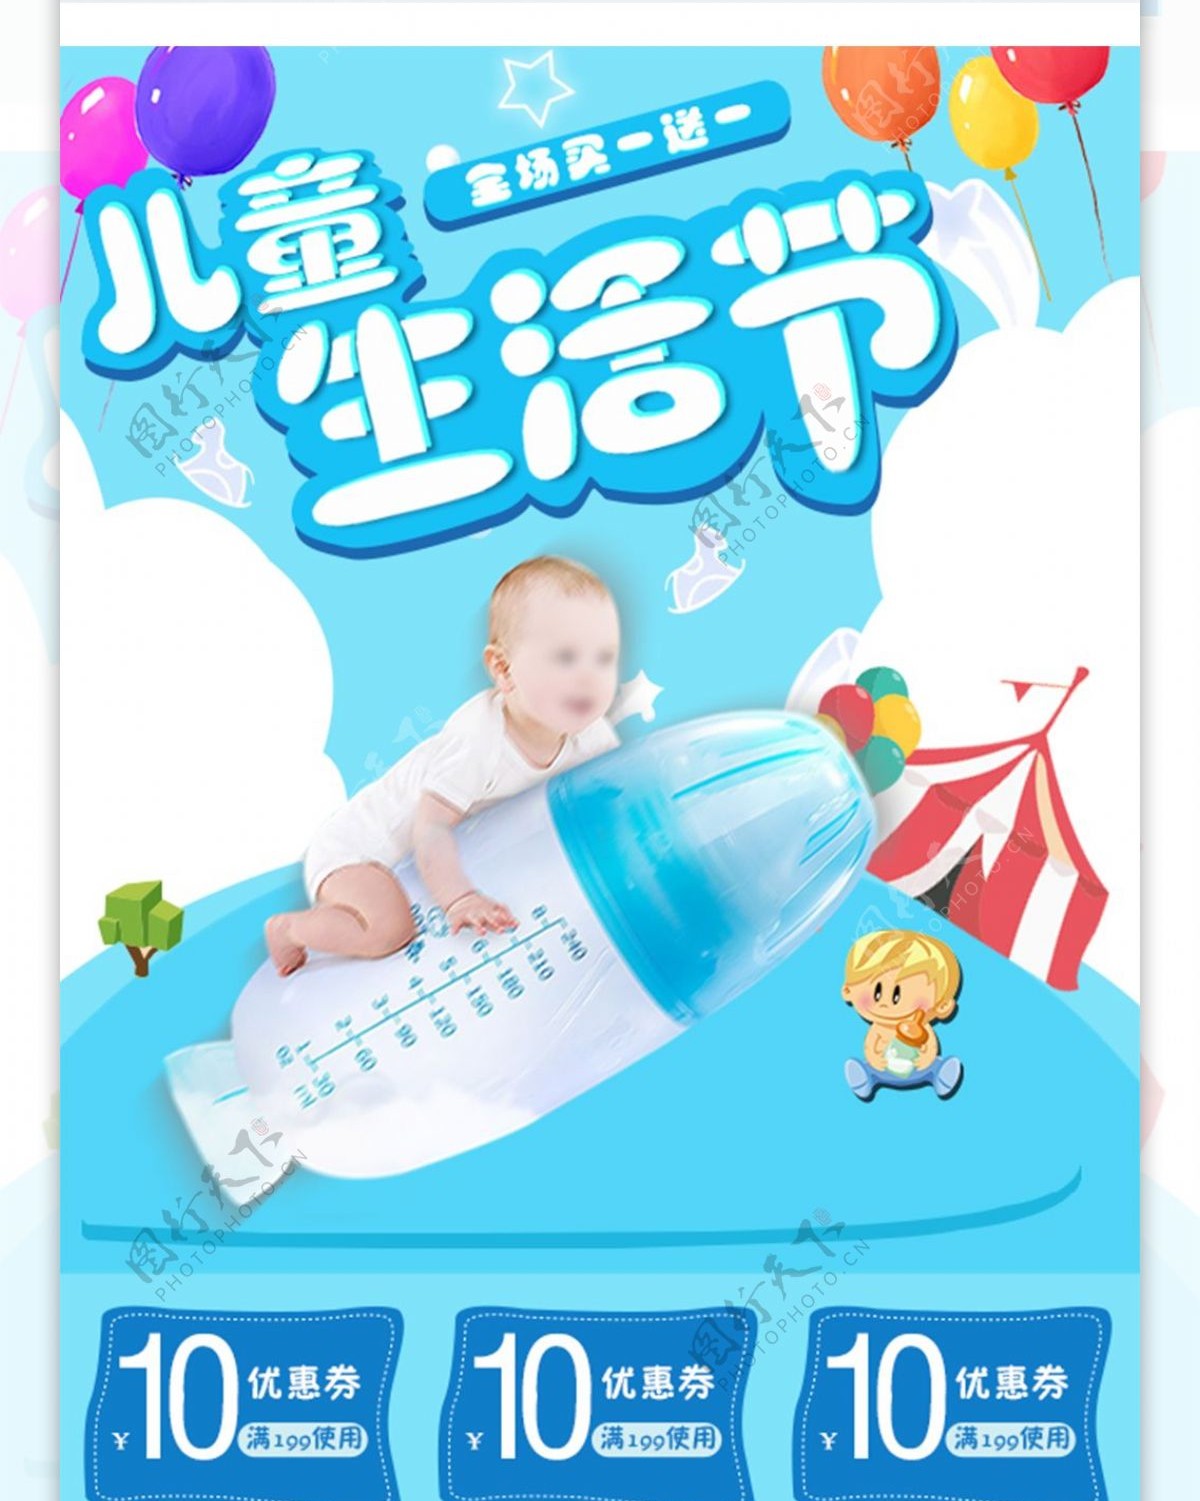 儿童生活节蓝色婴儿用品卡通风移动端首页